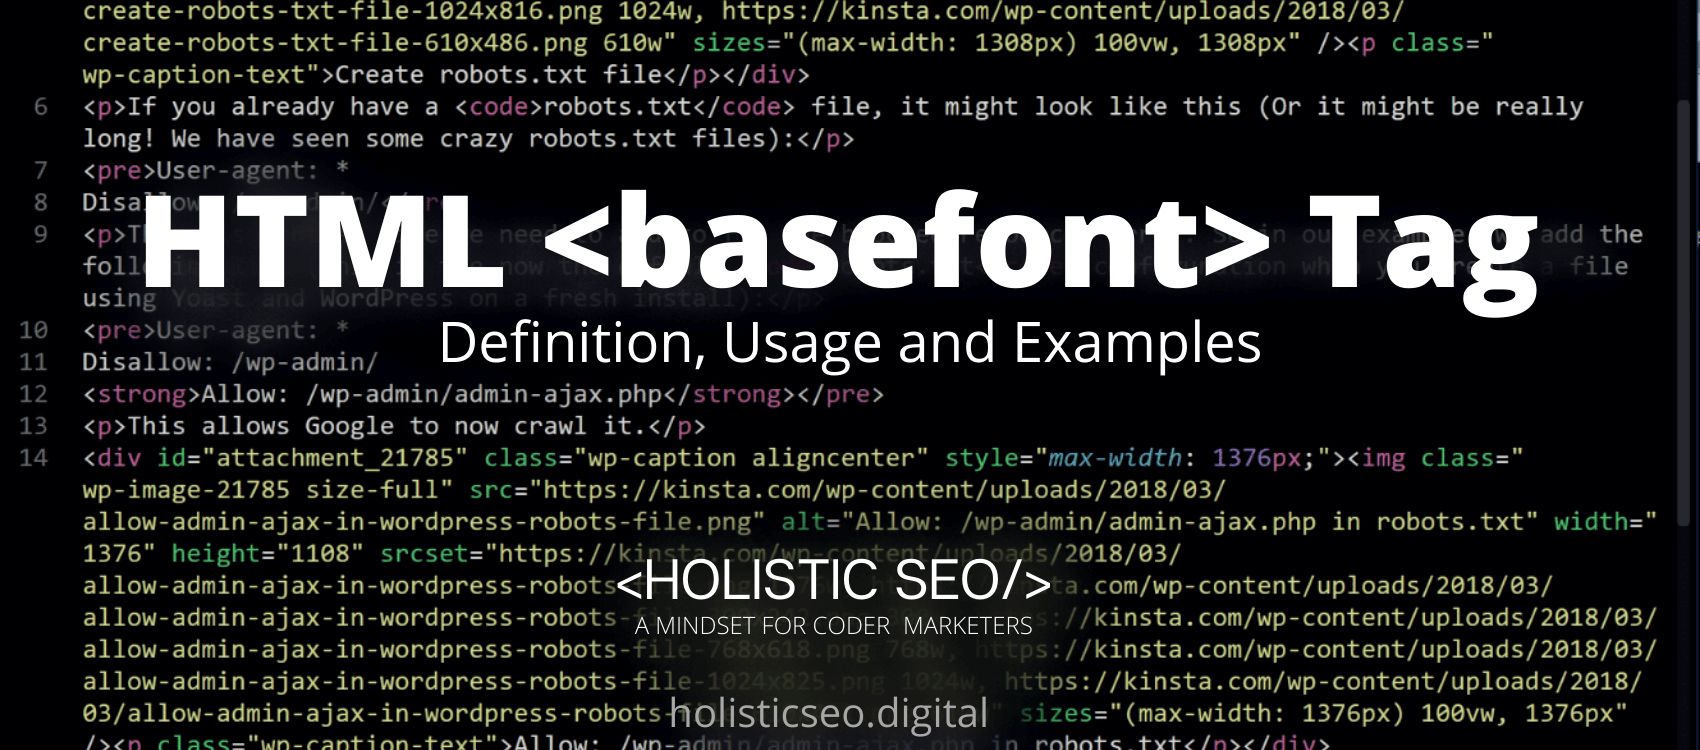 basefont HTML Tag